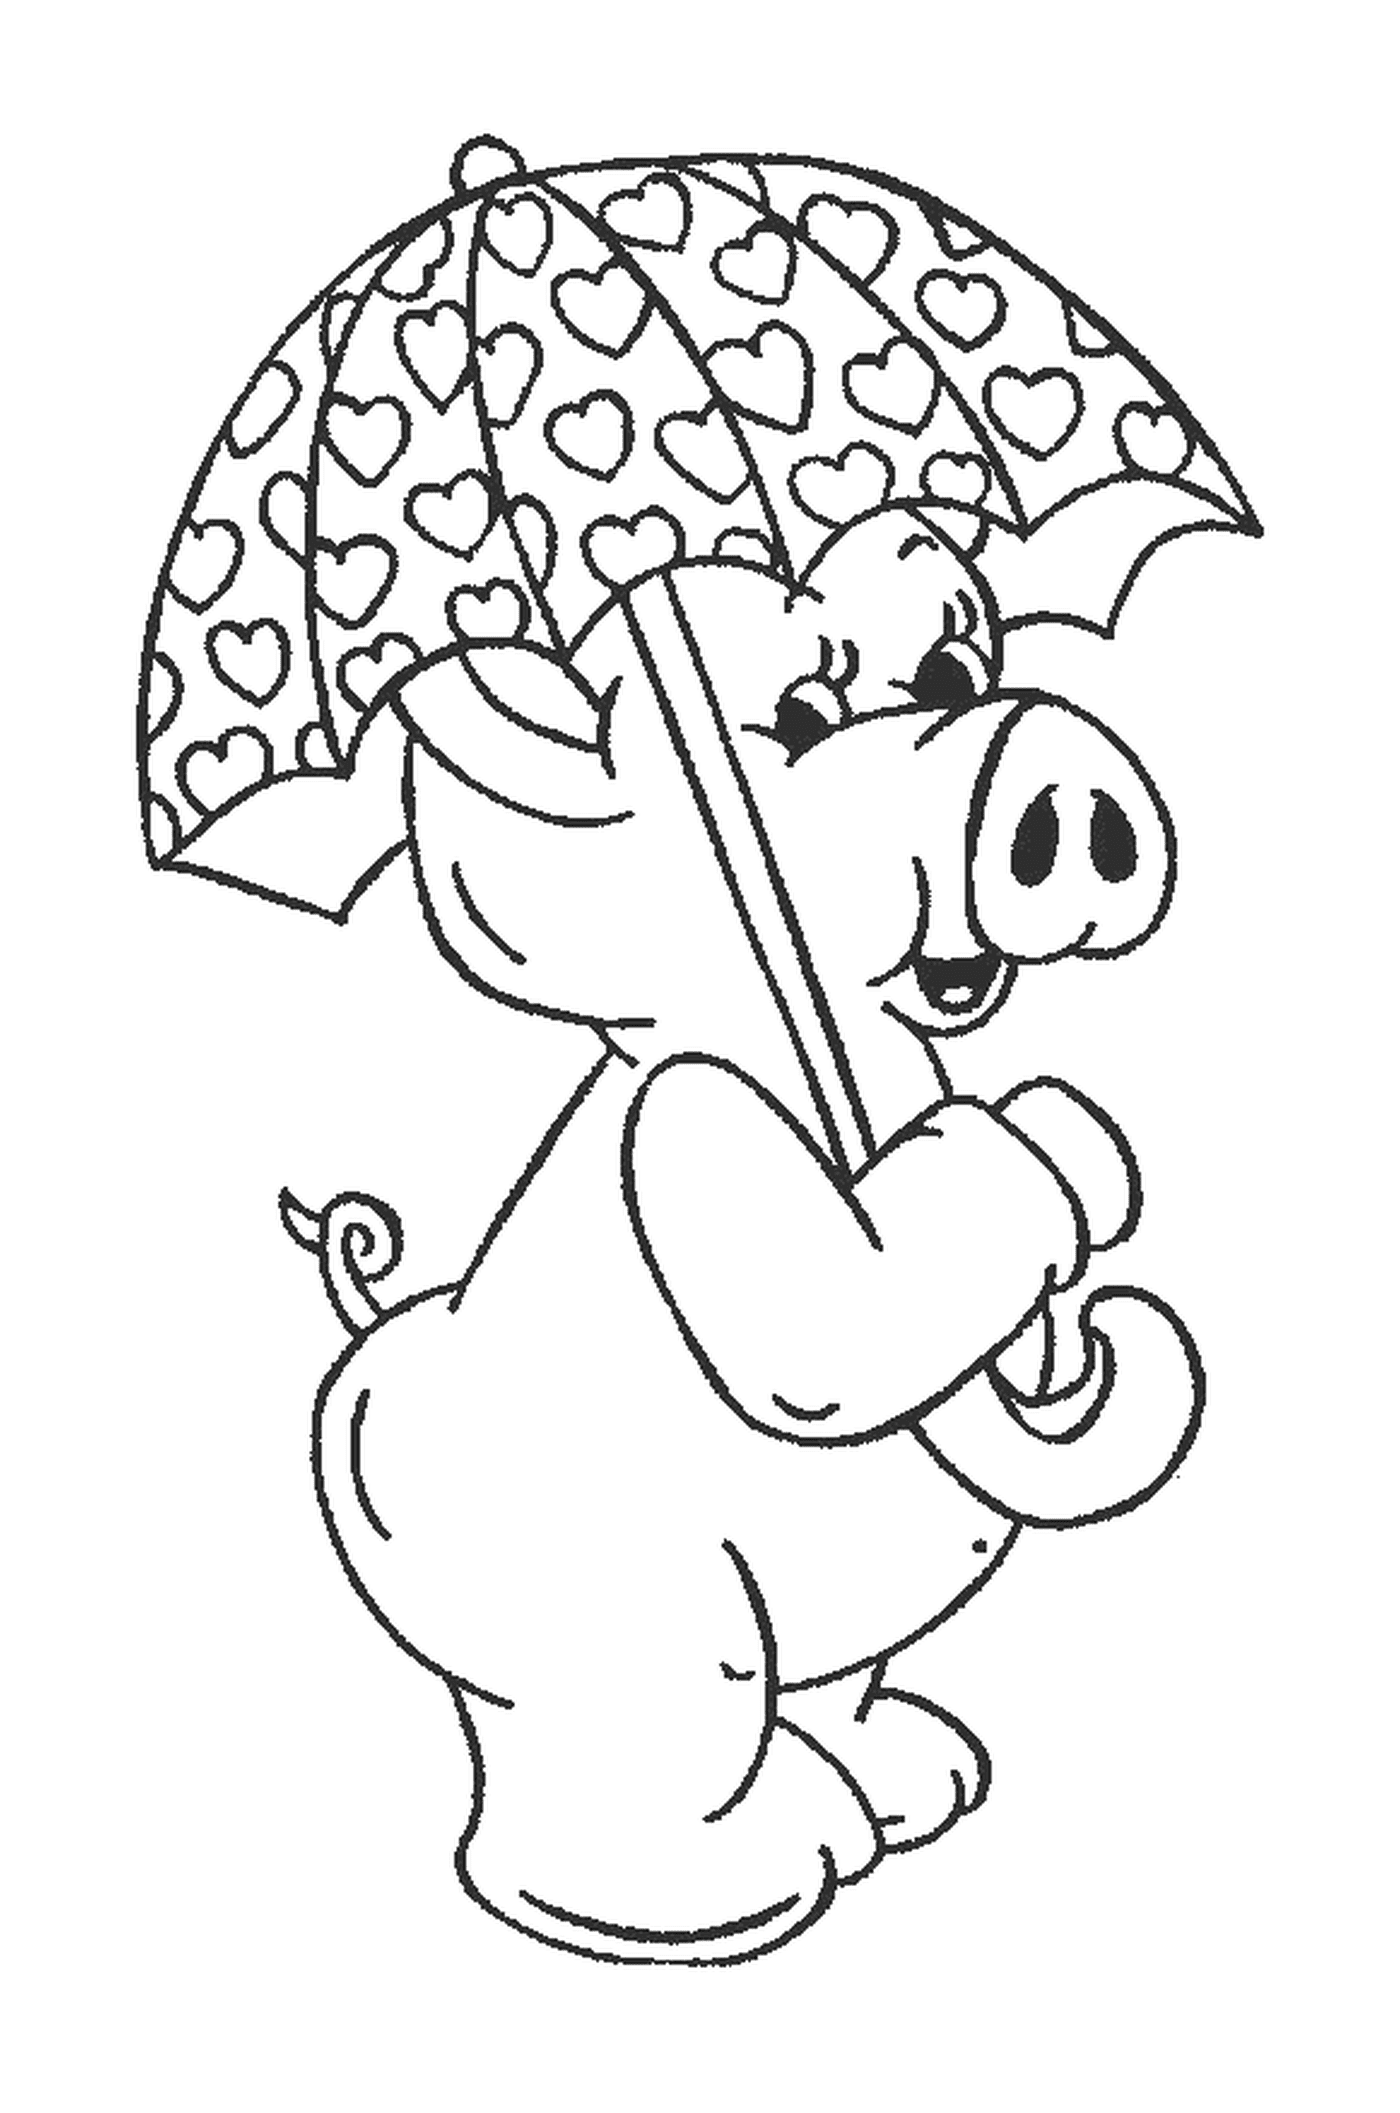  Un cerdo sosteniendo un paraguas en su boca 